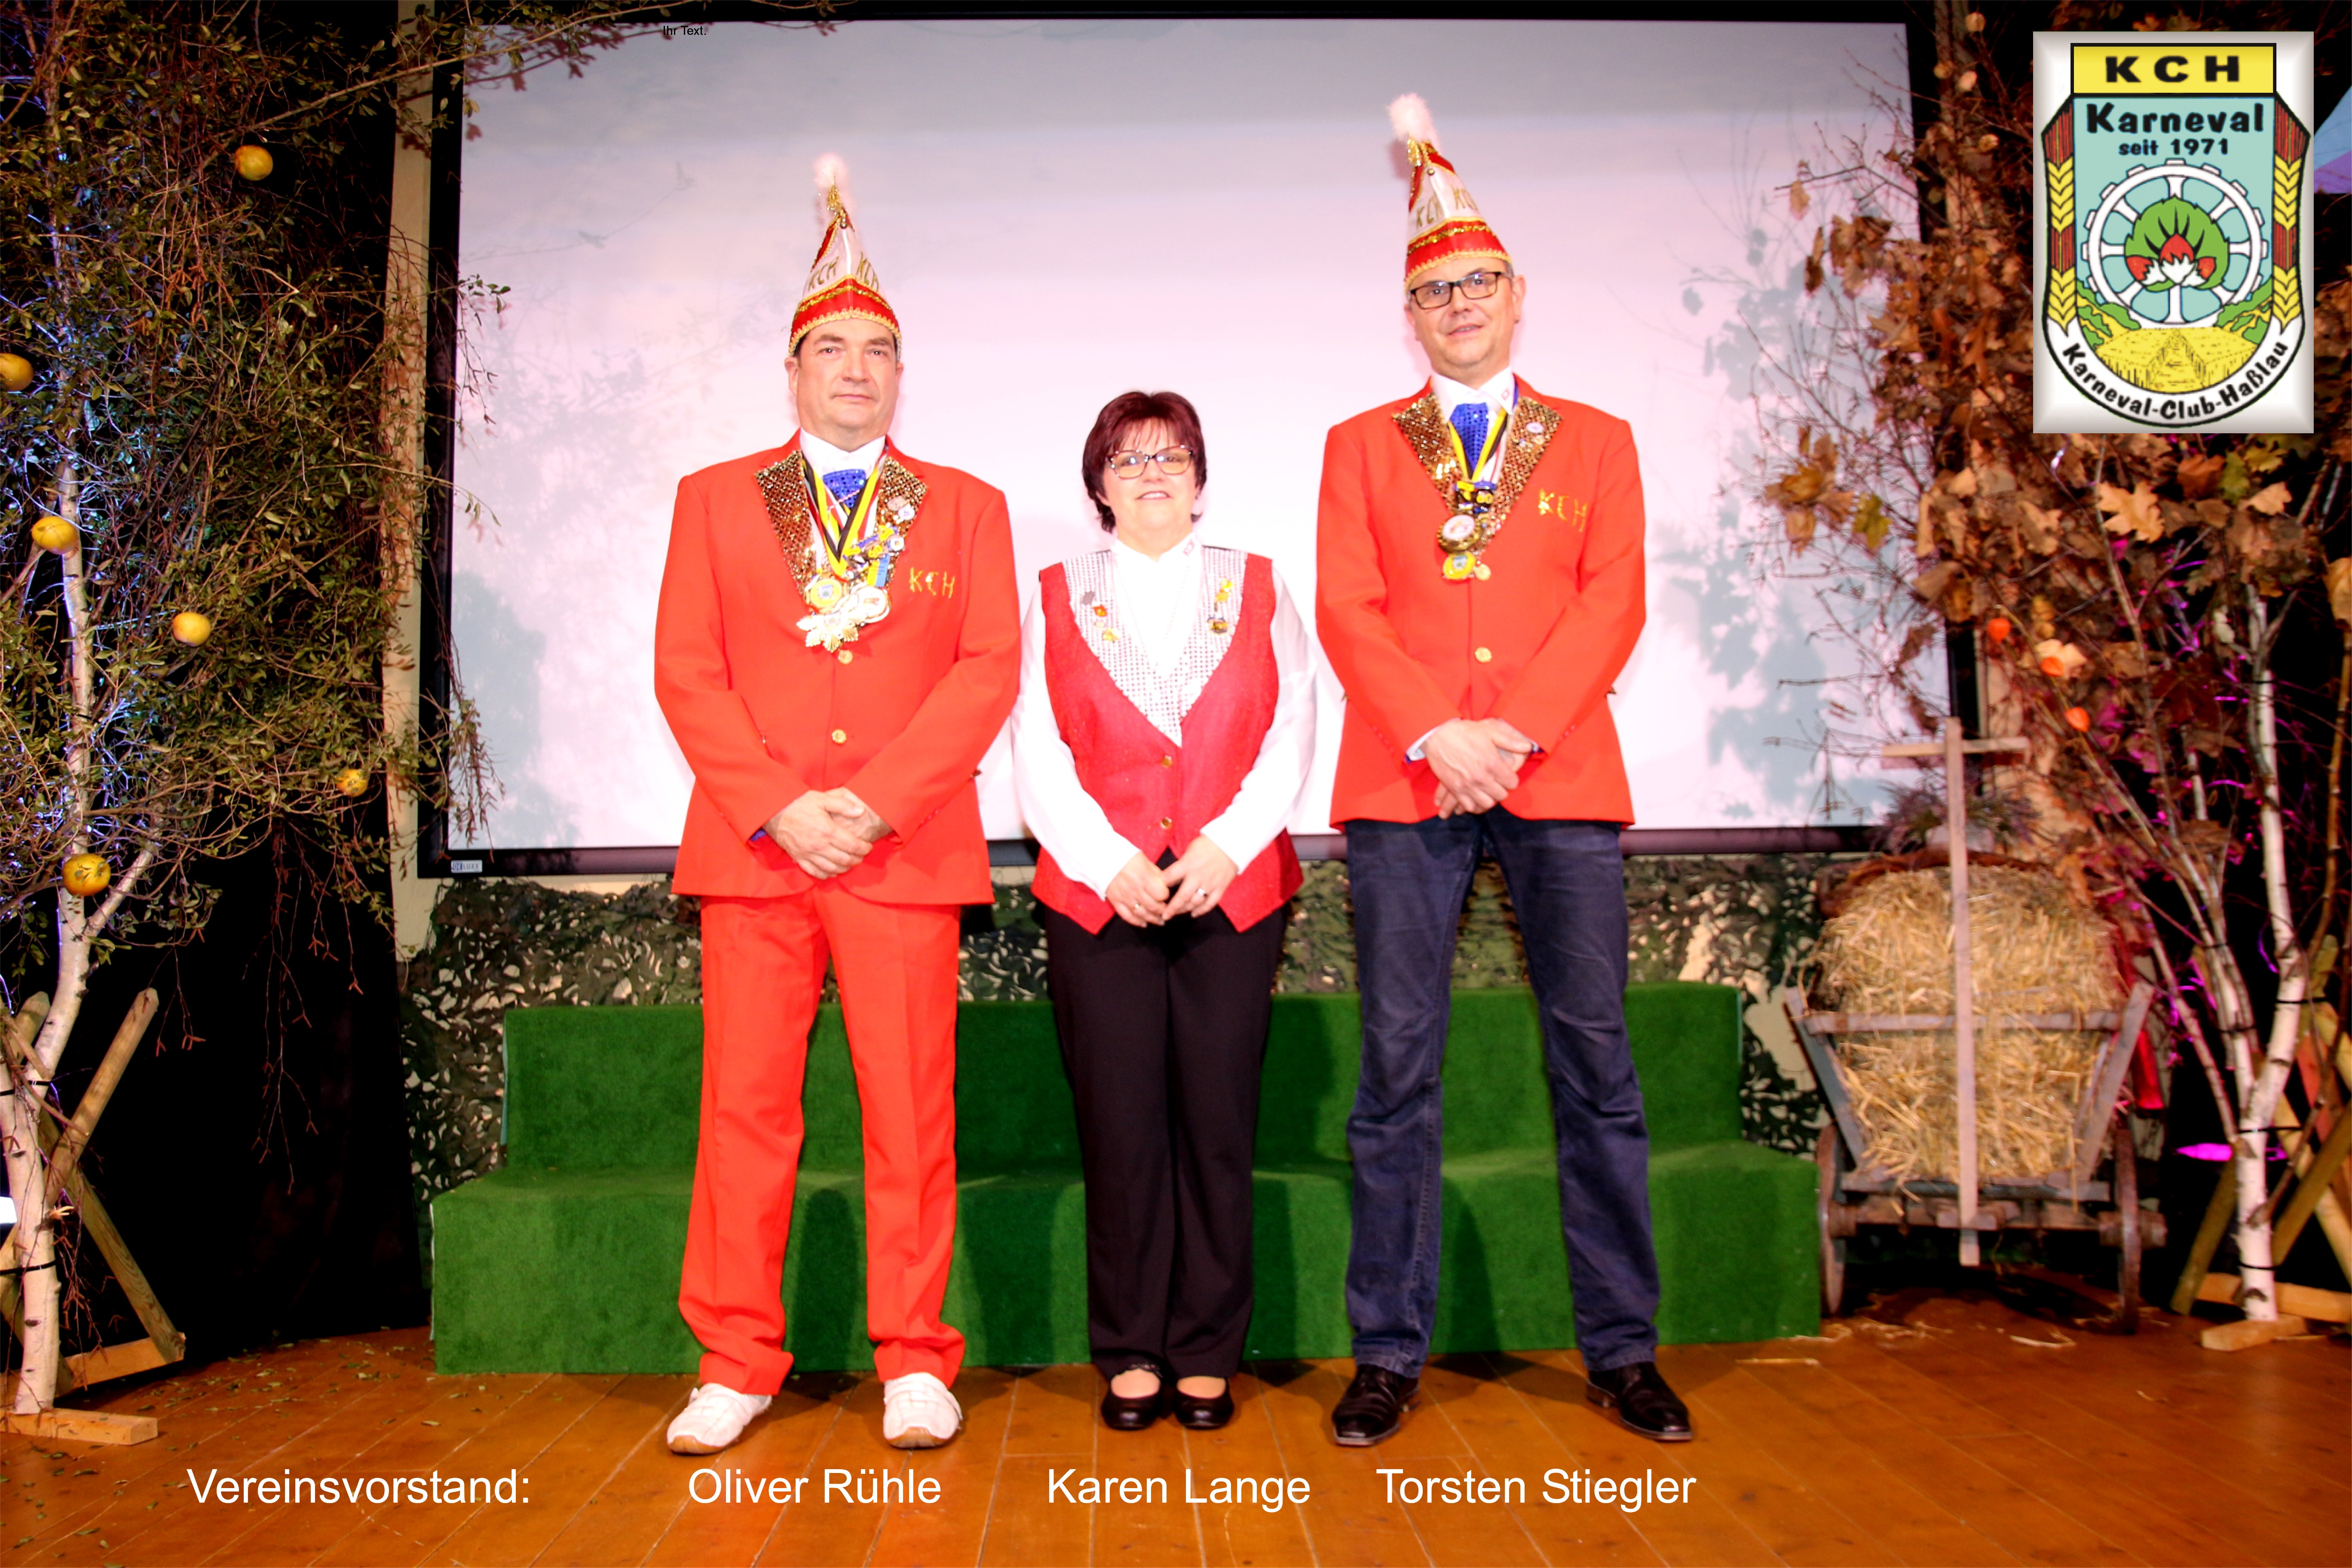 Vereinsvorstand: Präsident des KCH Oliver Rühle, Karen Lange und Torsten Stiegler